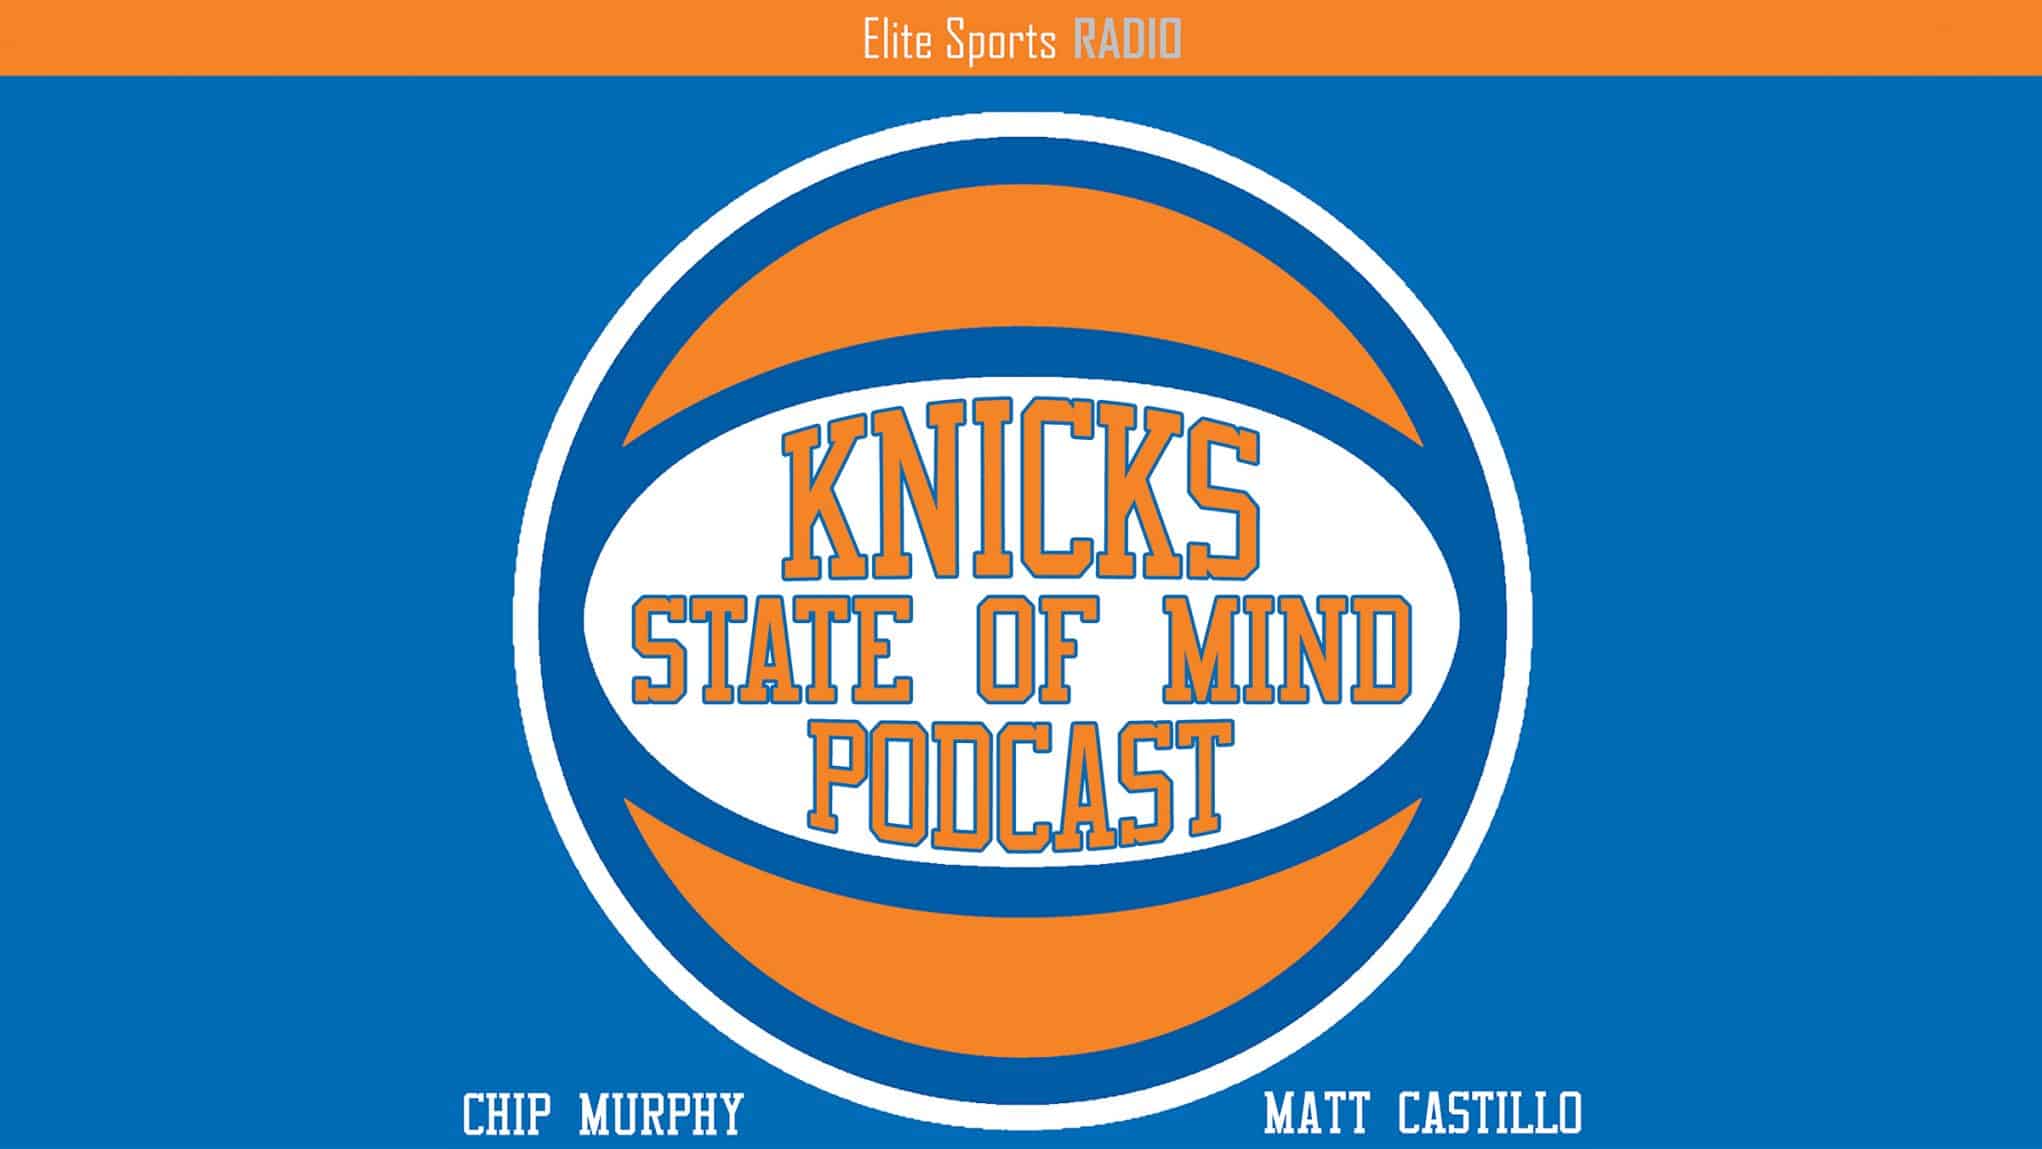 Knicks State of Mind Podcast